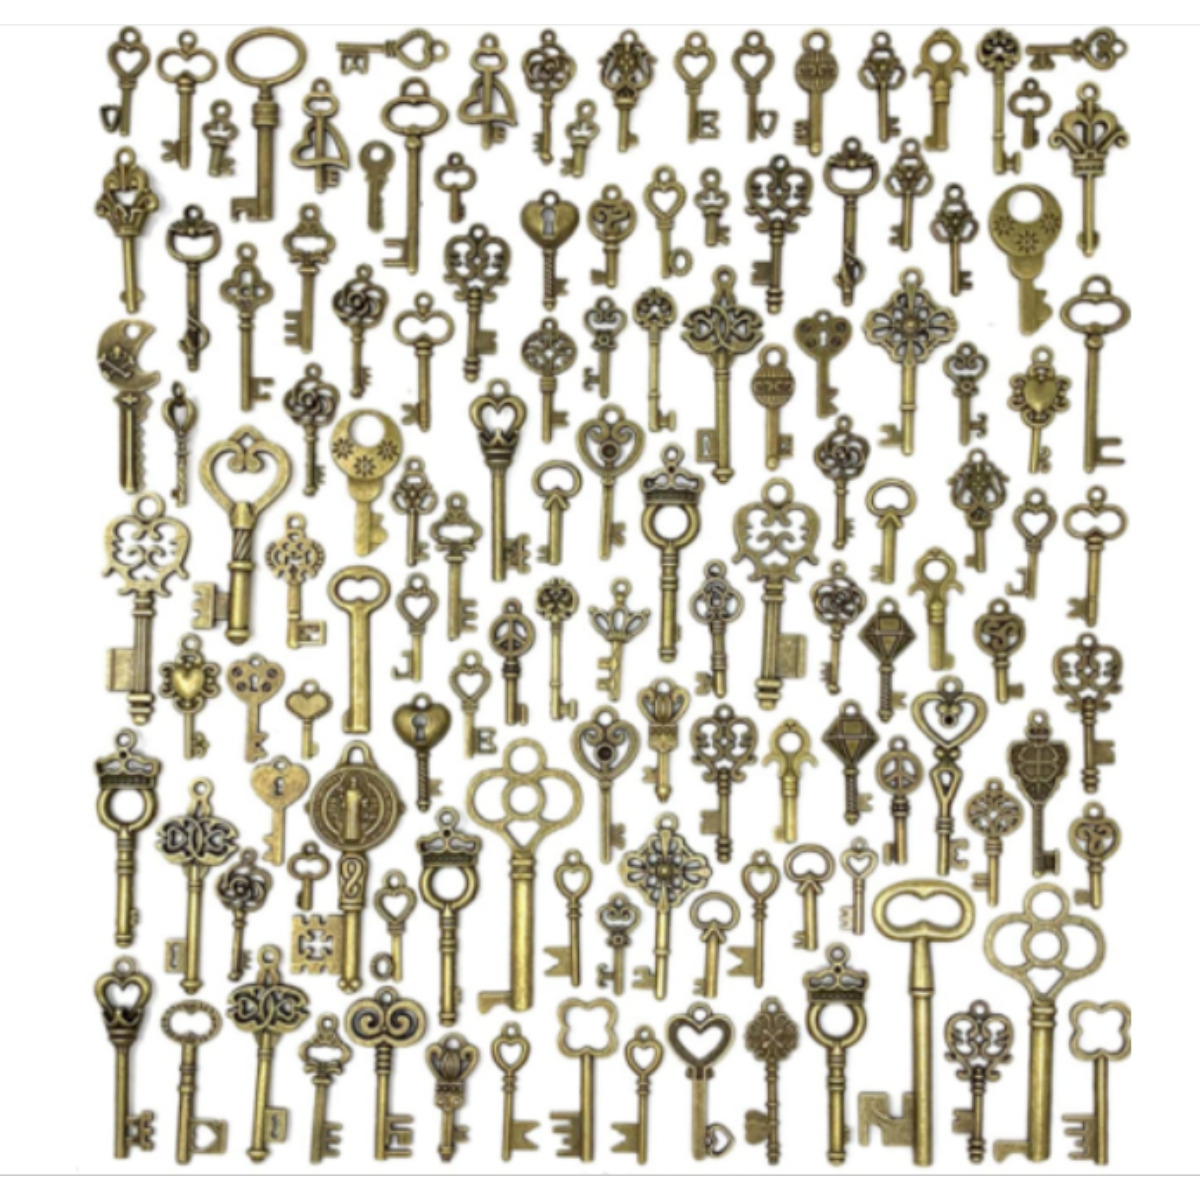 Old Vintage Antique Skeleton 125 Keys Lot Small Large Bulk Necklace Pendant Cra